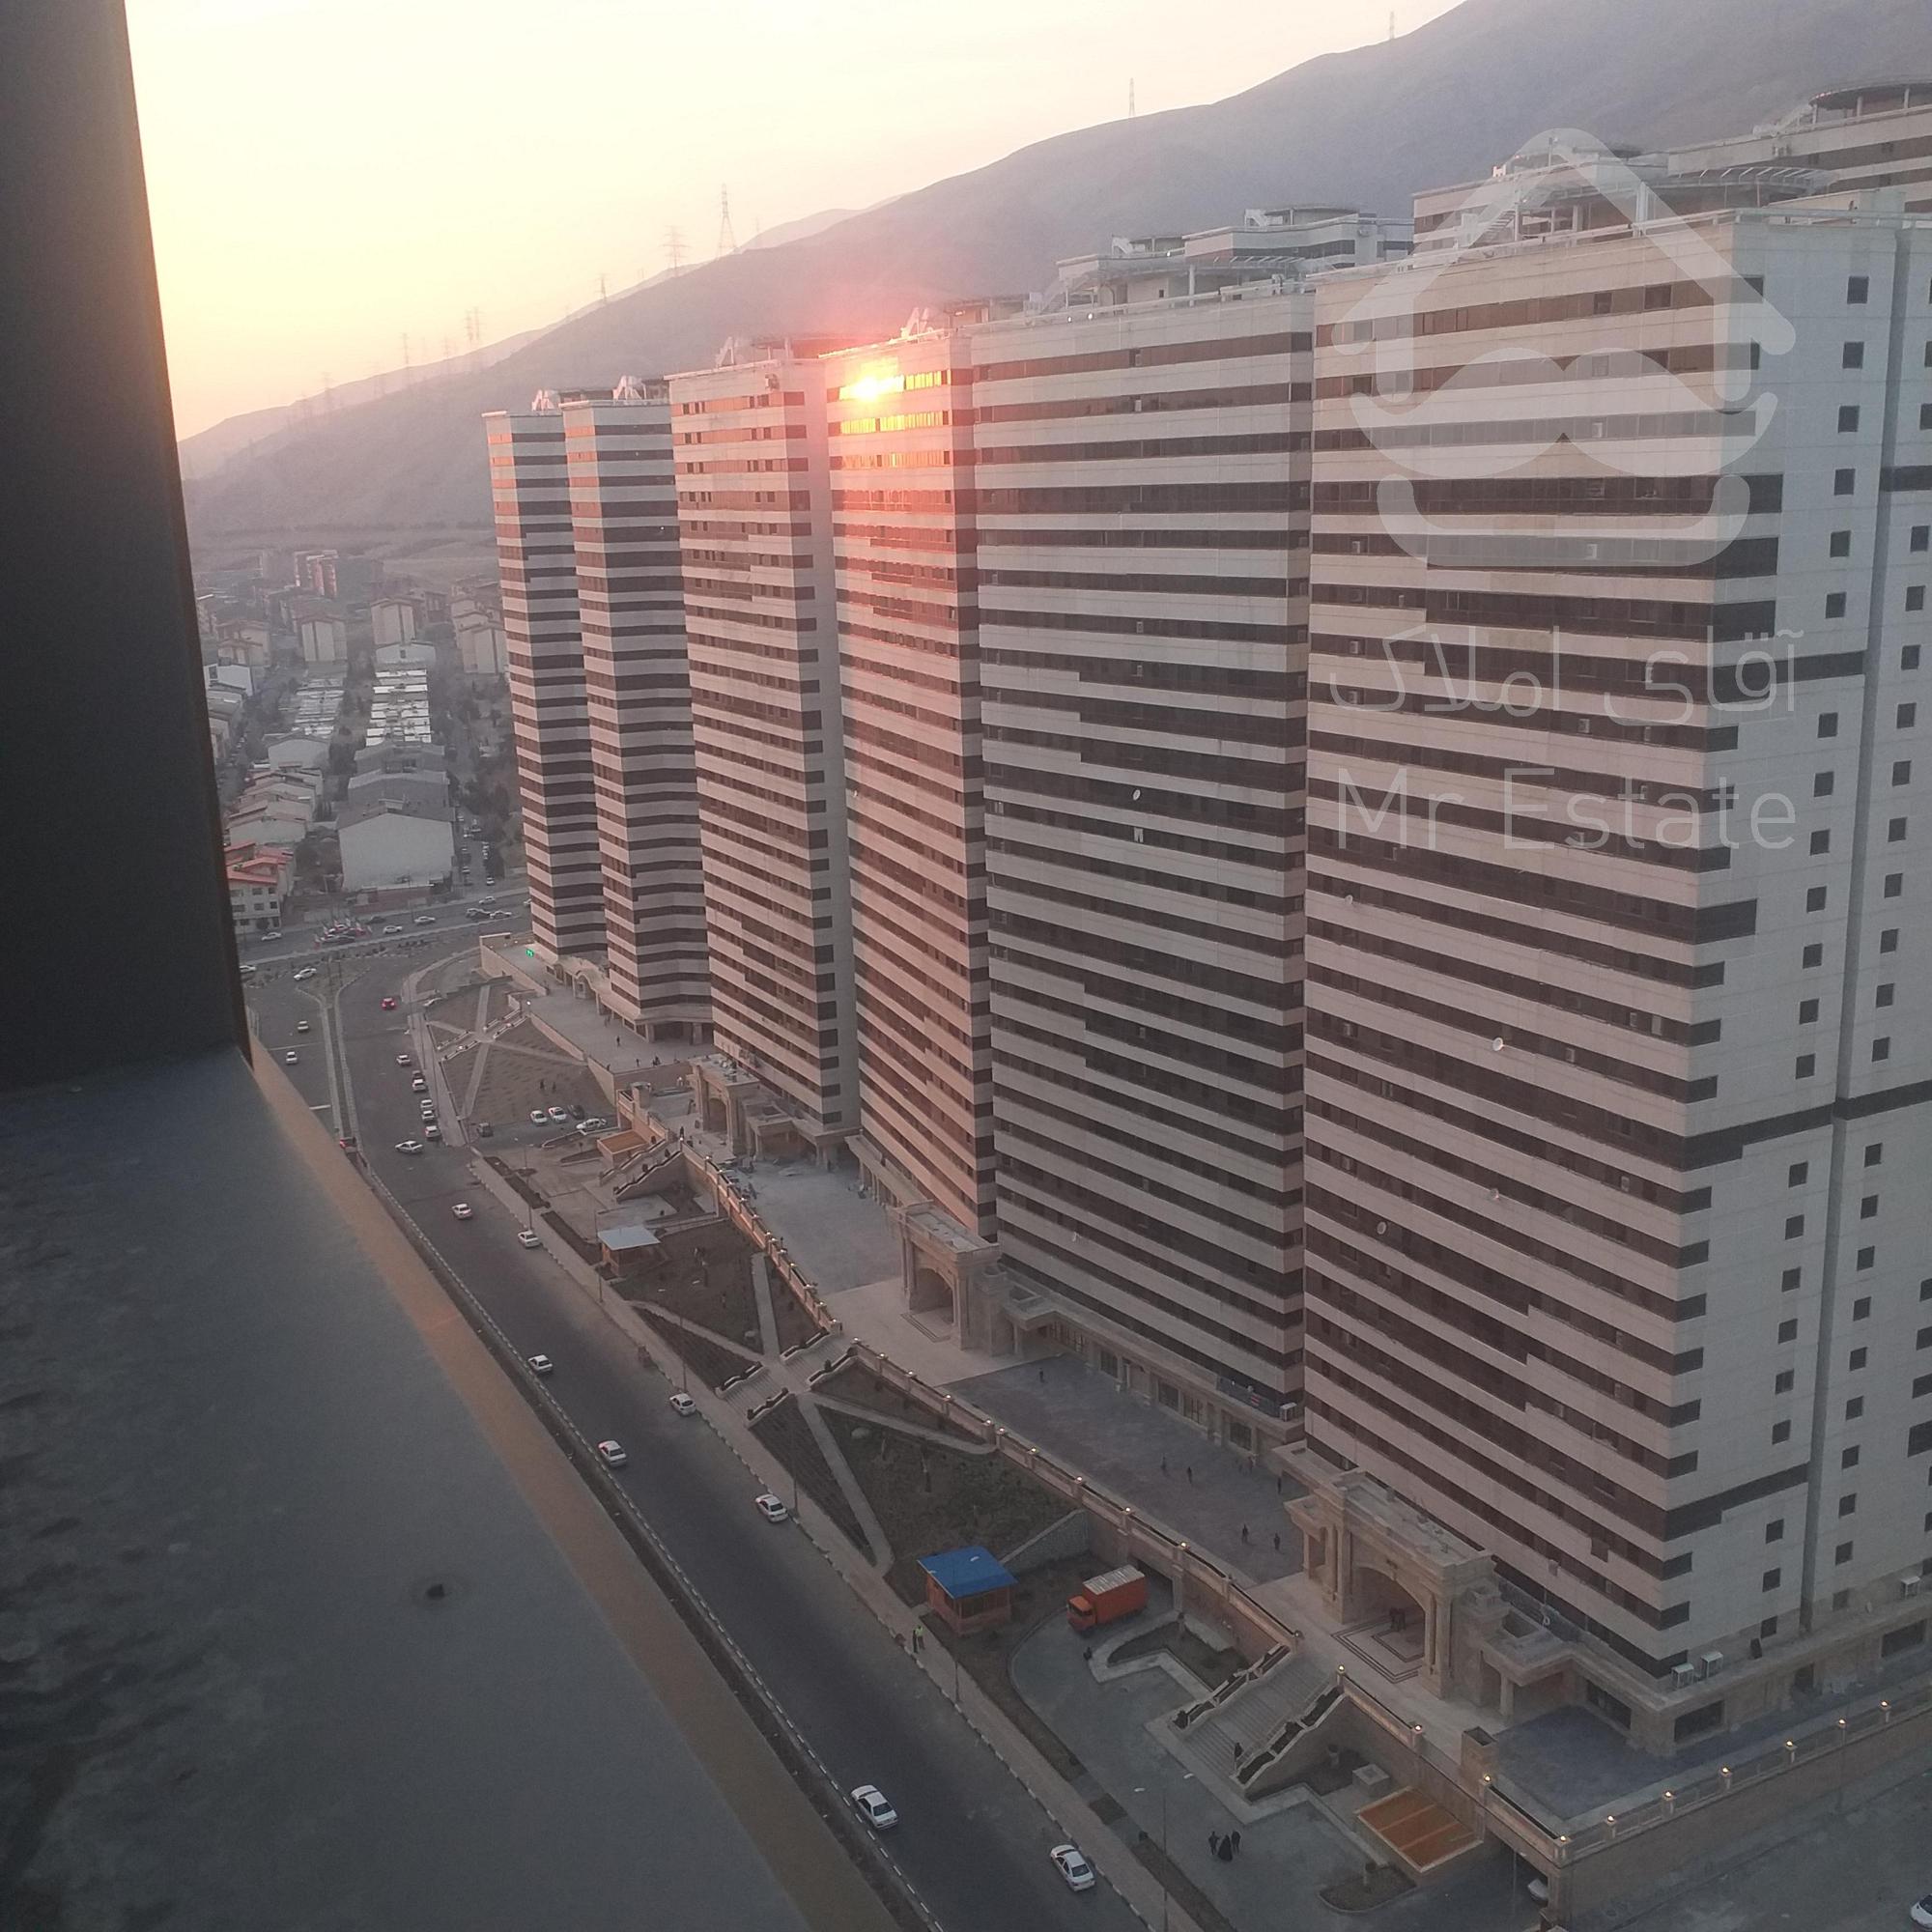 خرید واحد مسکونی بصورت اقساطی از اتحادیه تعاونی چیتگر